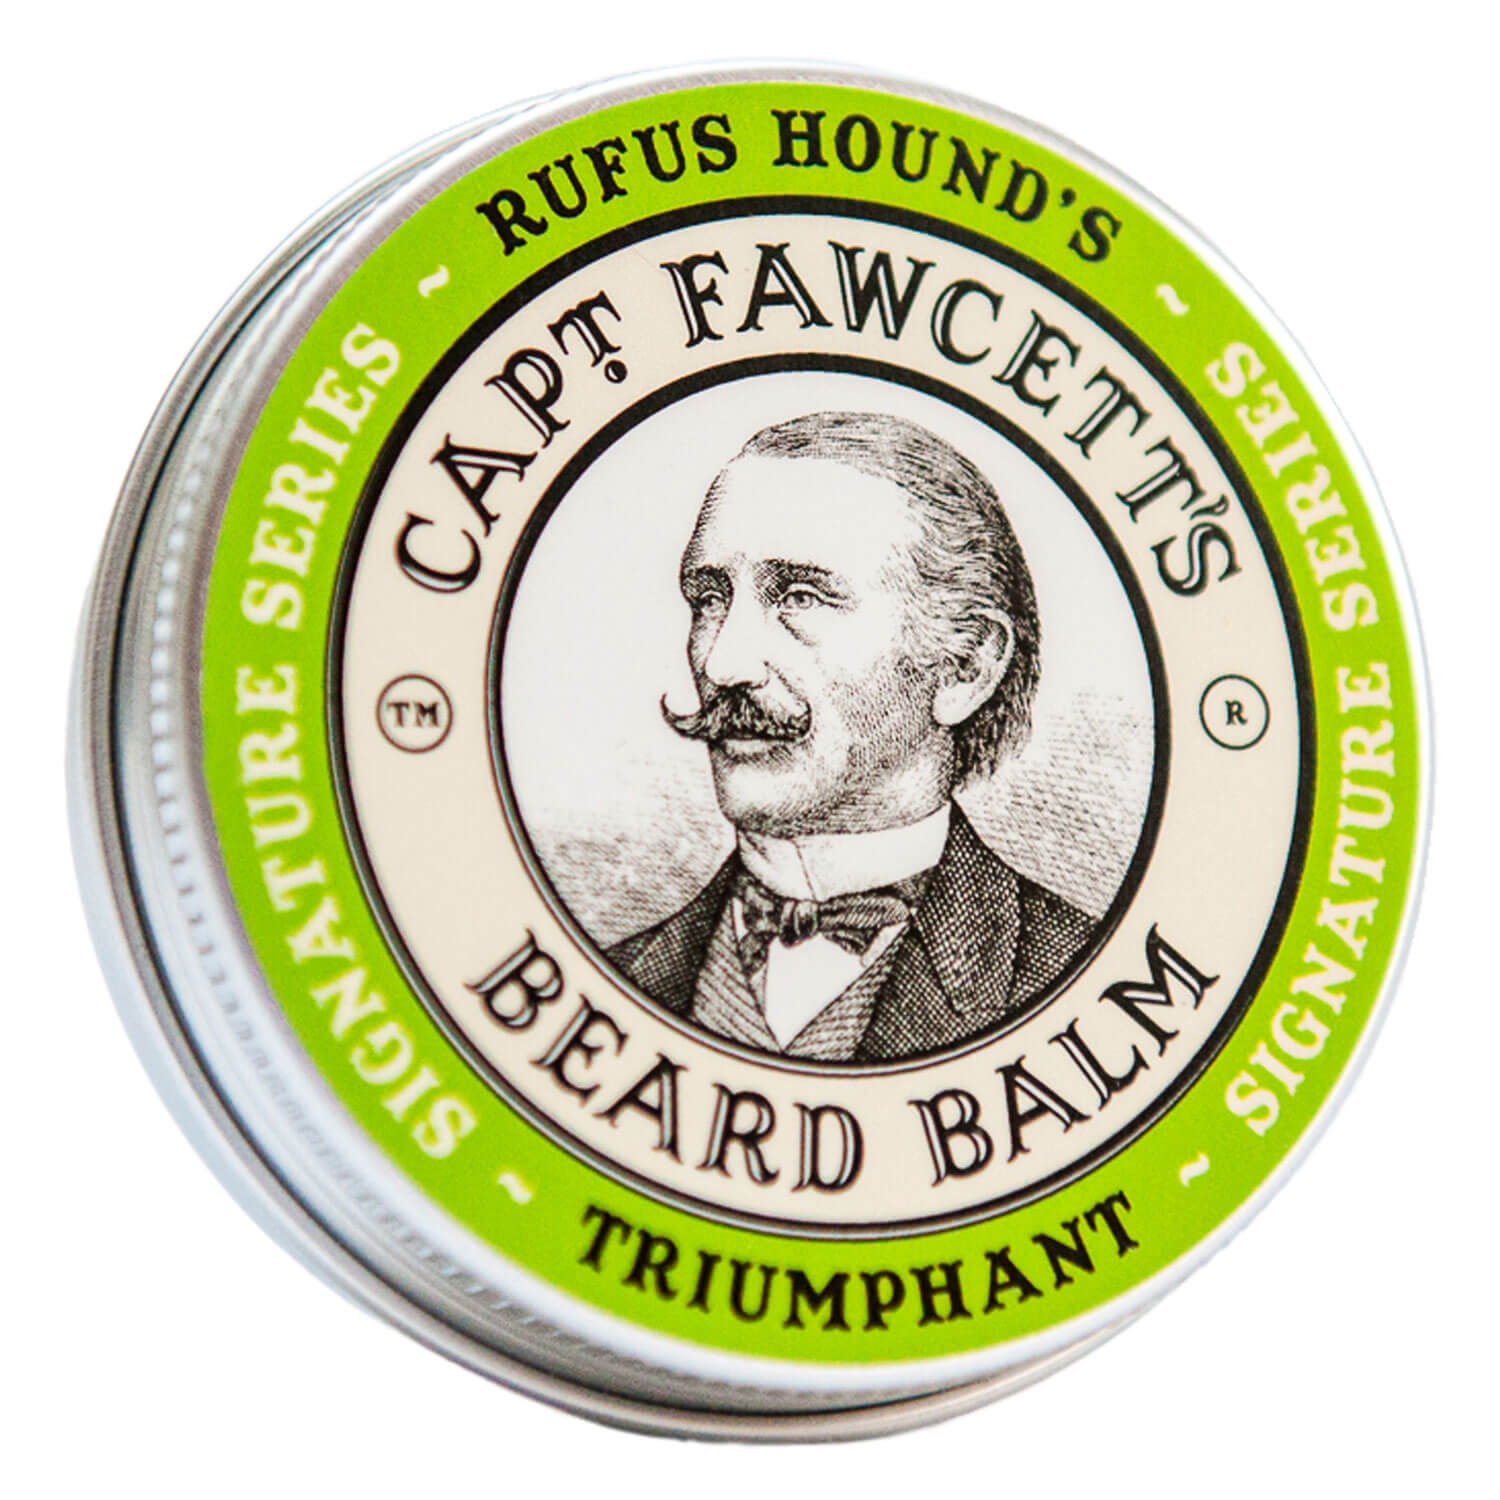 Image du produit de Capt. Fawcett Care - Triumphant Beard Balm